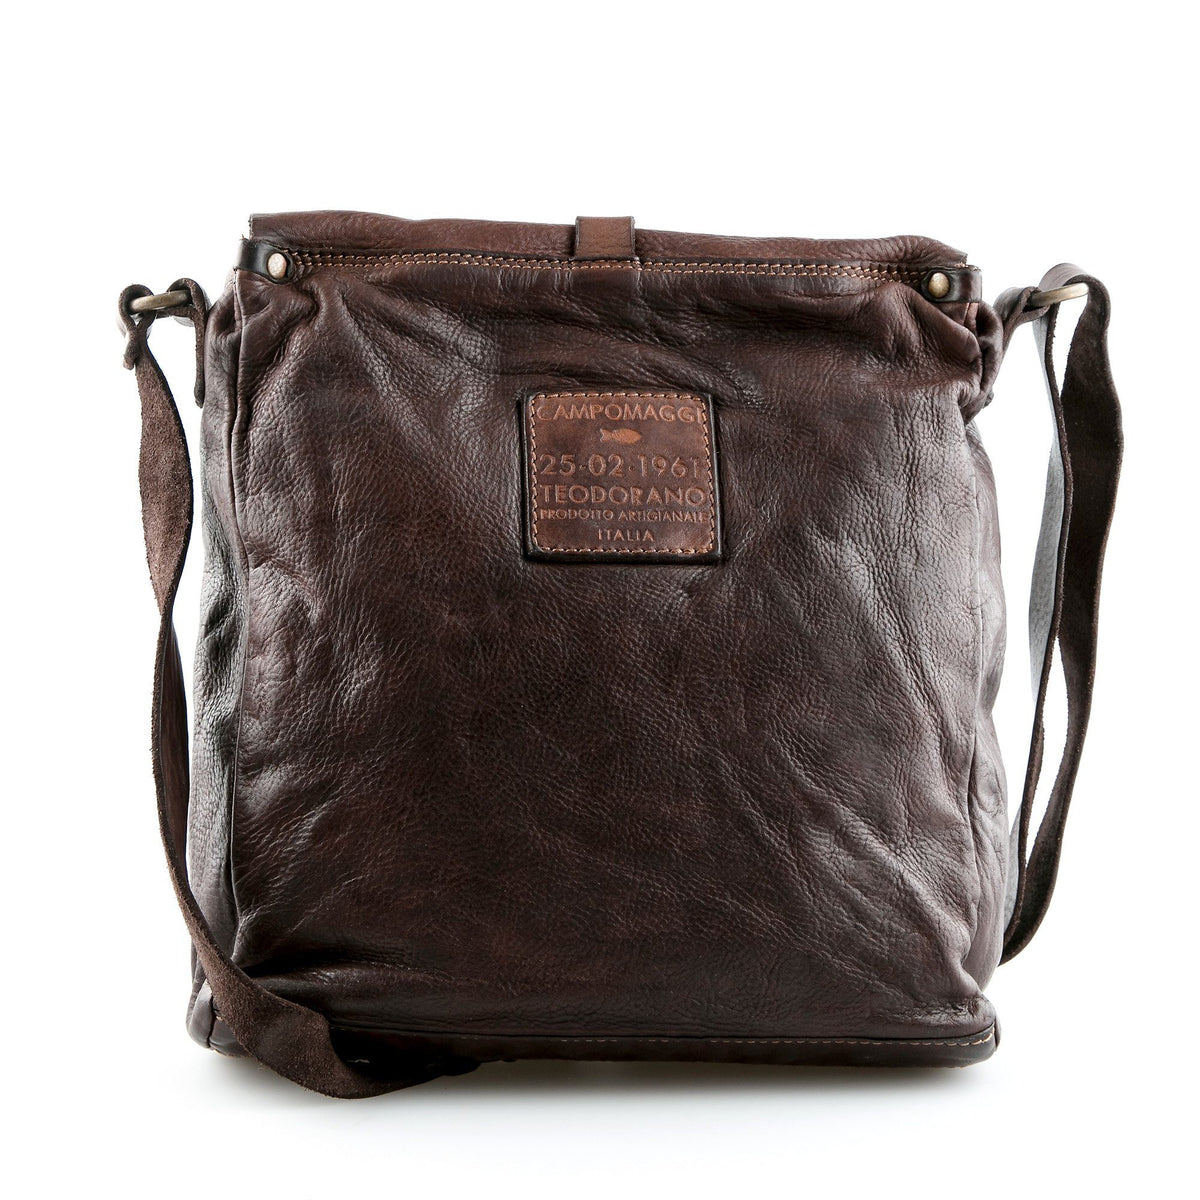 Campomaggi C1527 Italian Leather Shoulder Bag, Dark Brown - Fendrihan